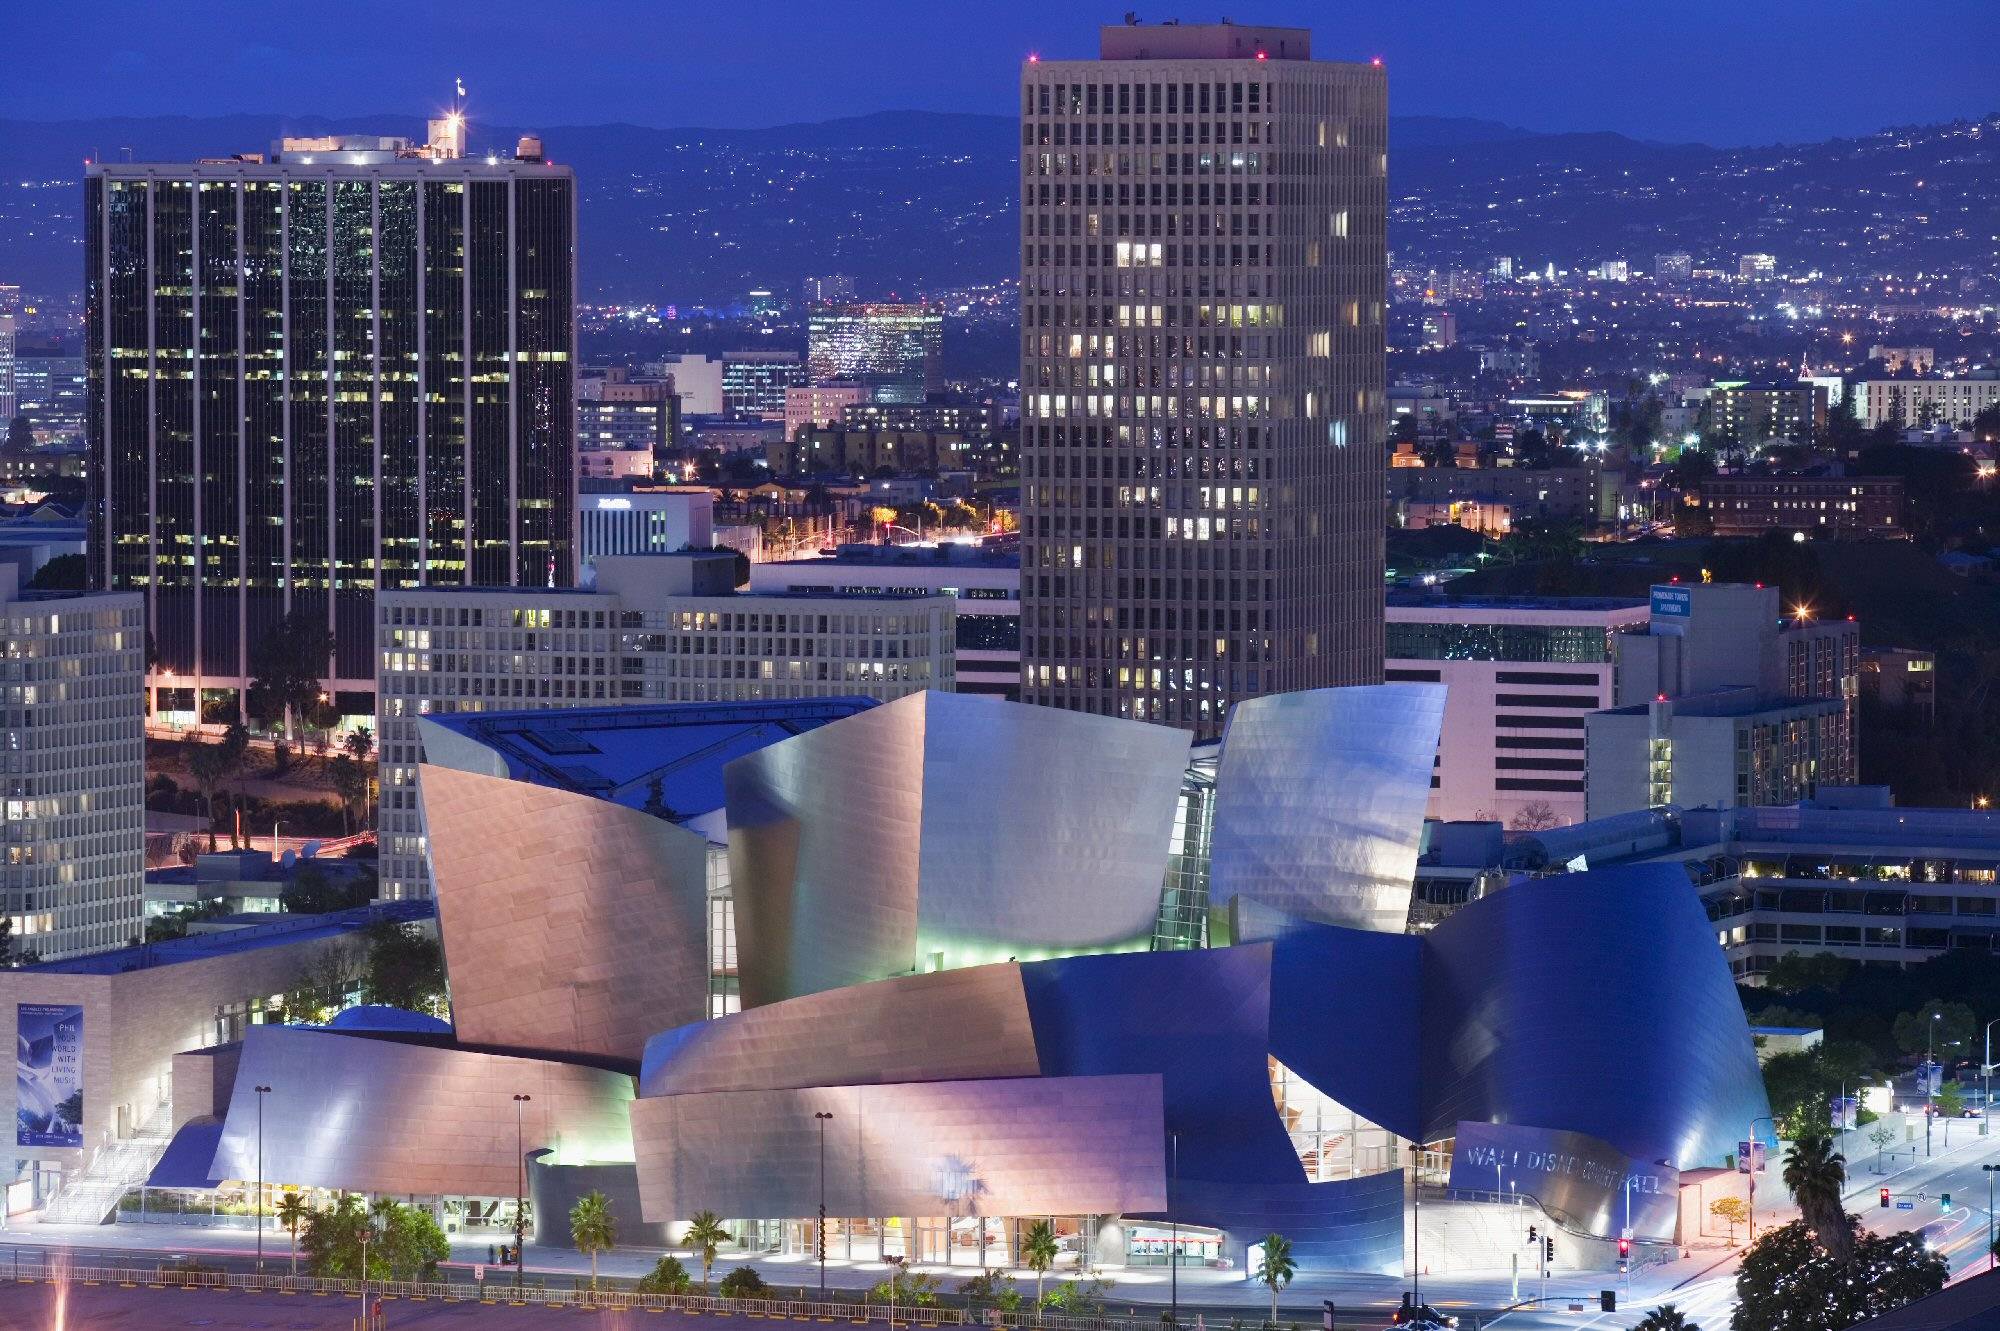 Концертный зал уолта диснея. Концертный зал Уолта Диснея в Лос-Анджелесе, США. Фрэнк Гери концертный зал Диснея в Лос Анджелесе. Концертный зал имени Уолта Диснея Лос-Анджелес. Концертный зал Уолта Диснея в Лос-Анджелесе архитектура.